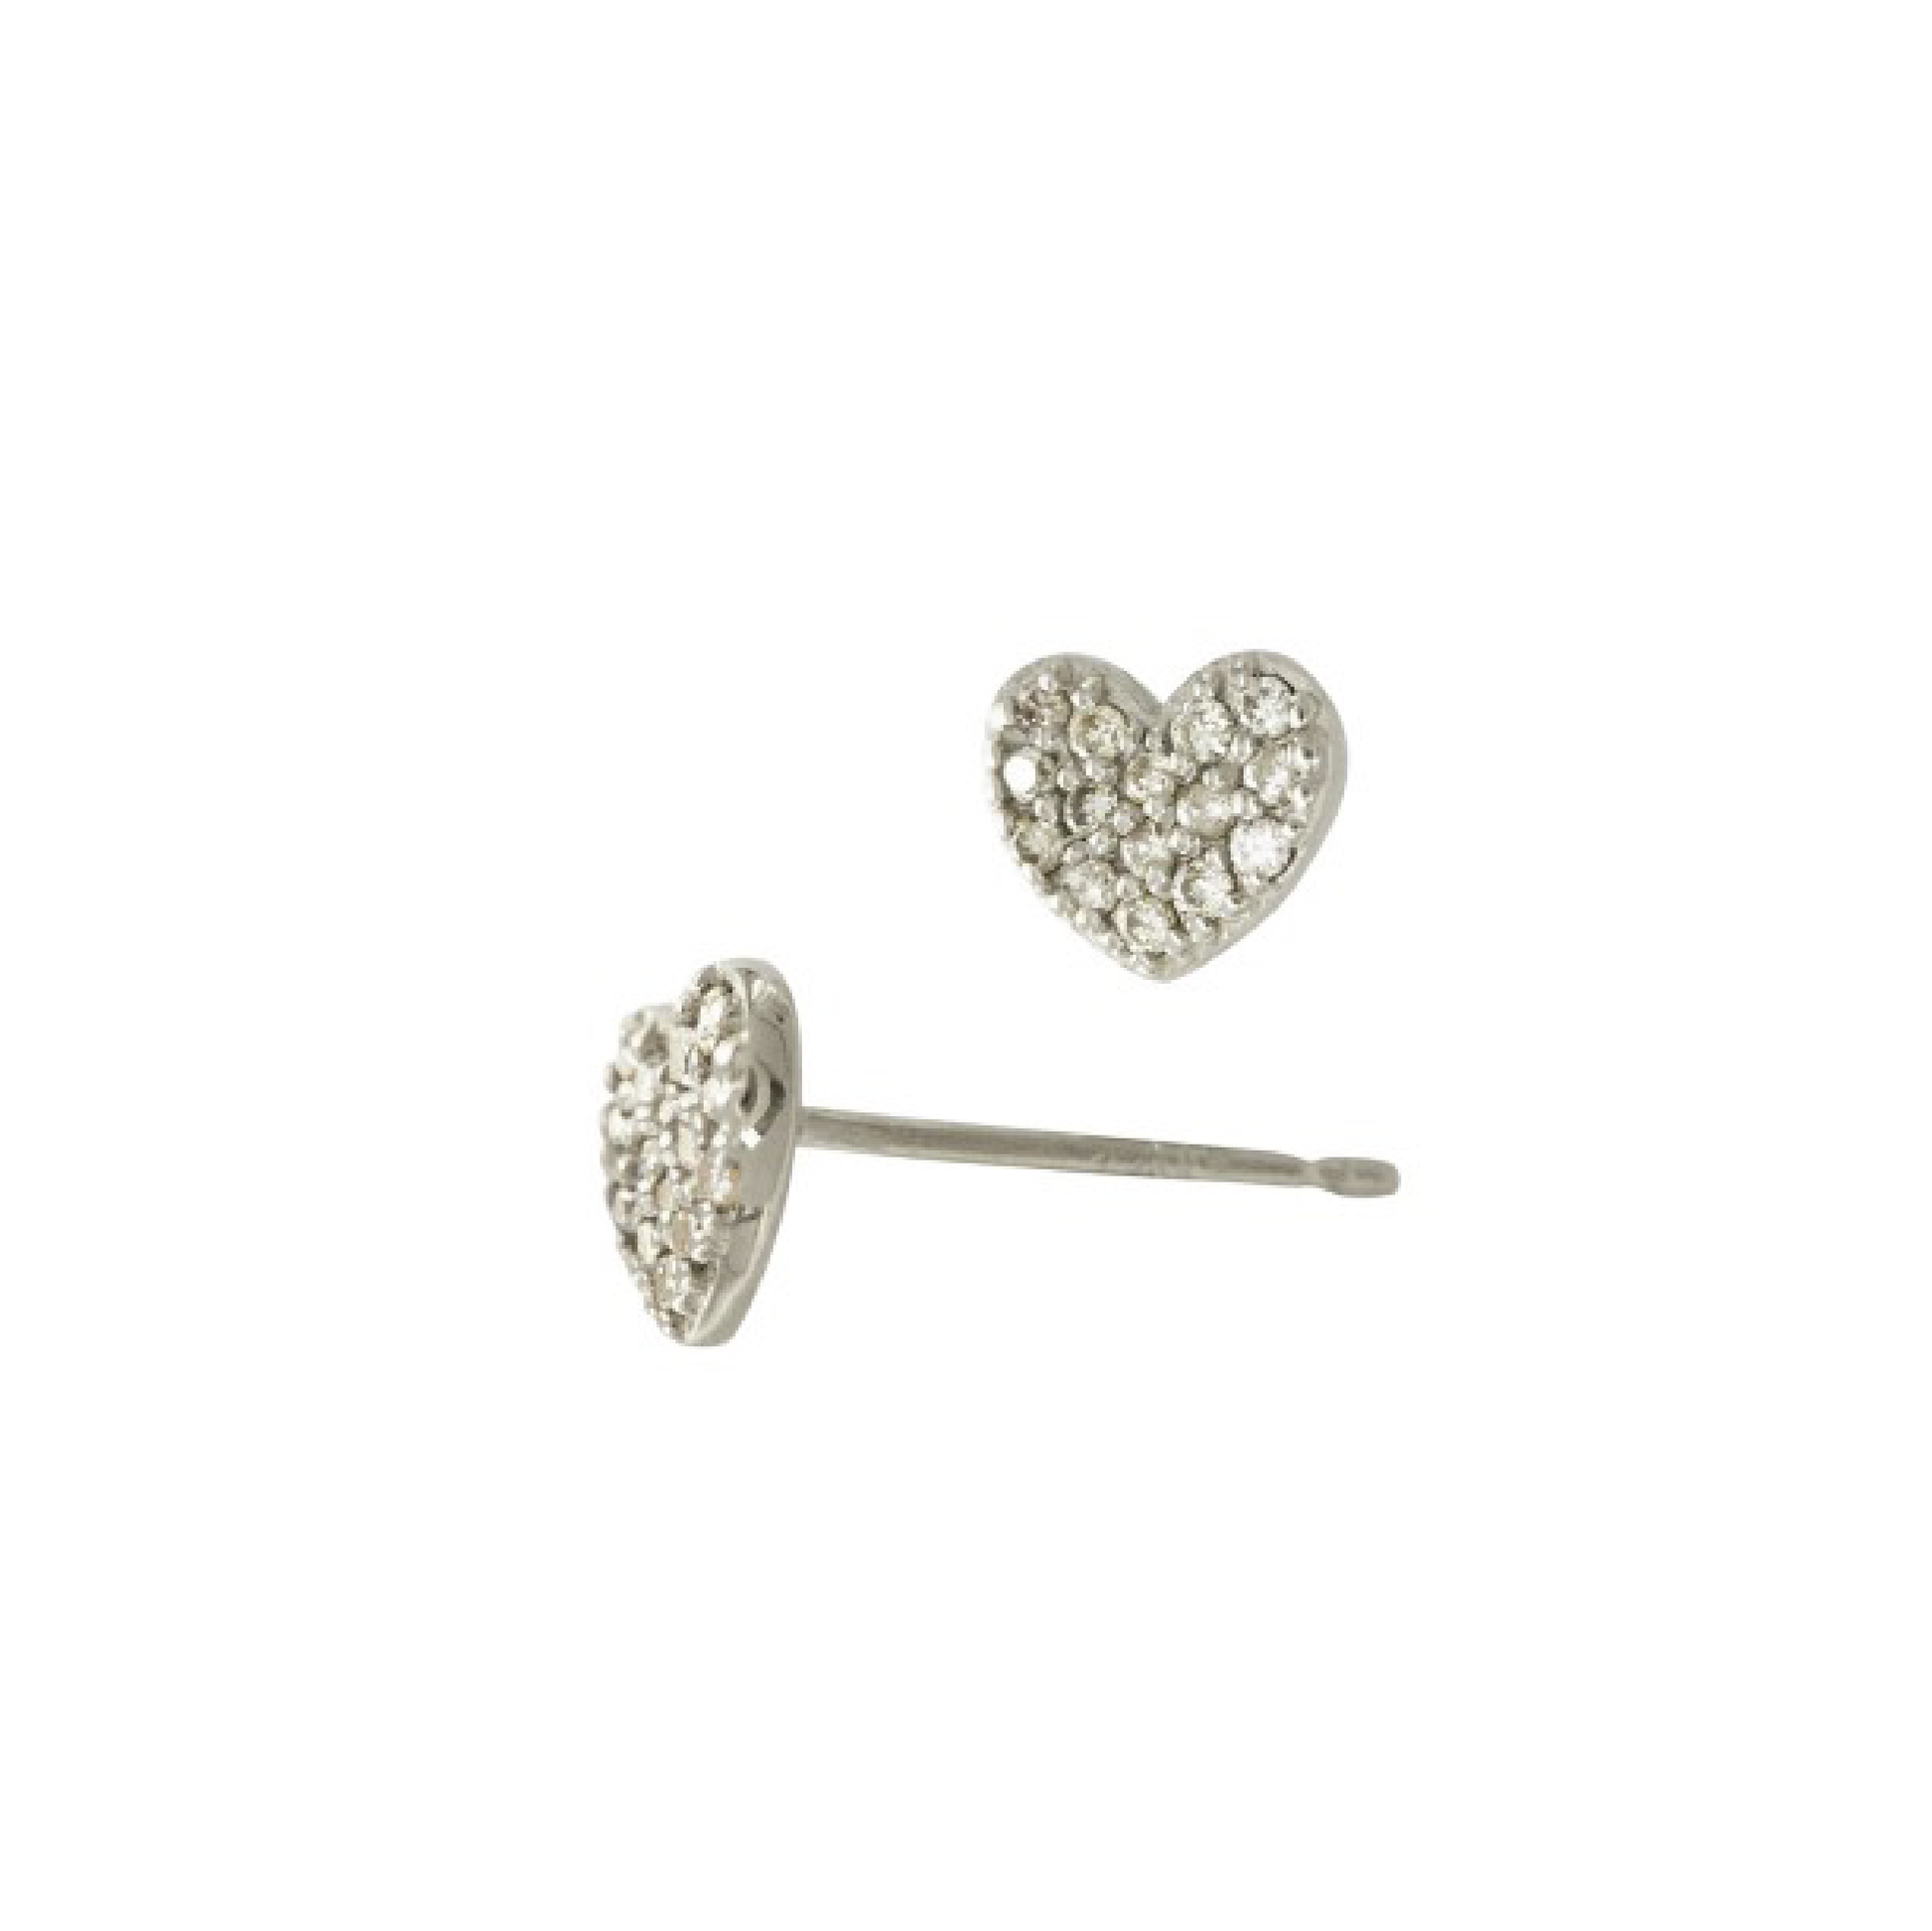 Petite Diamond Heart Earrings Robyn Canady 